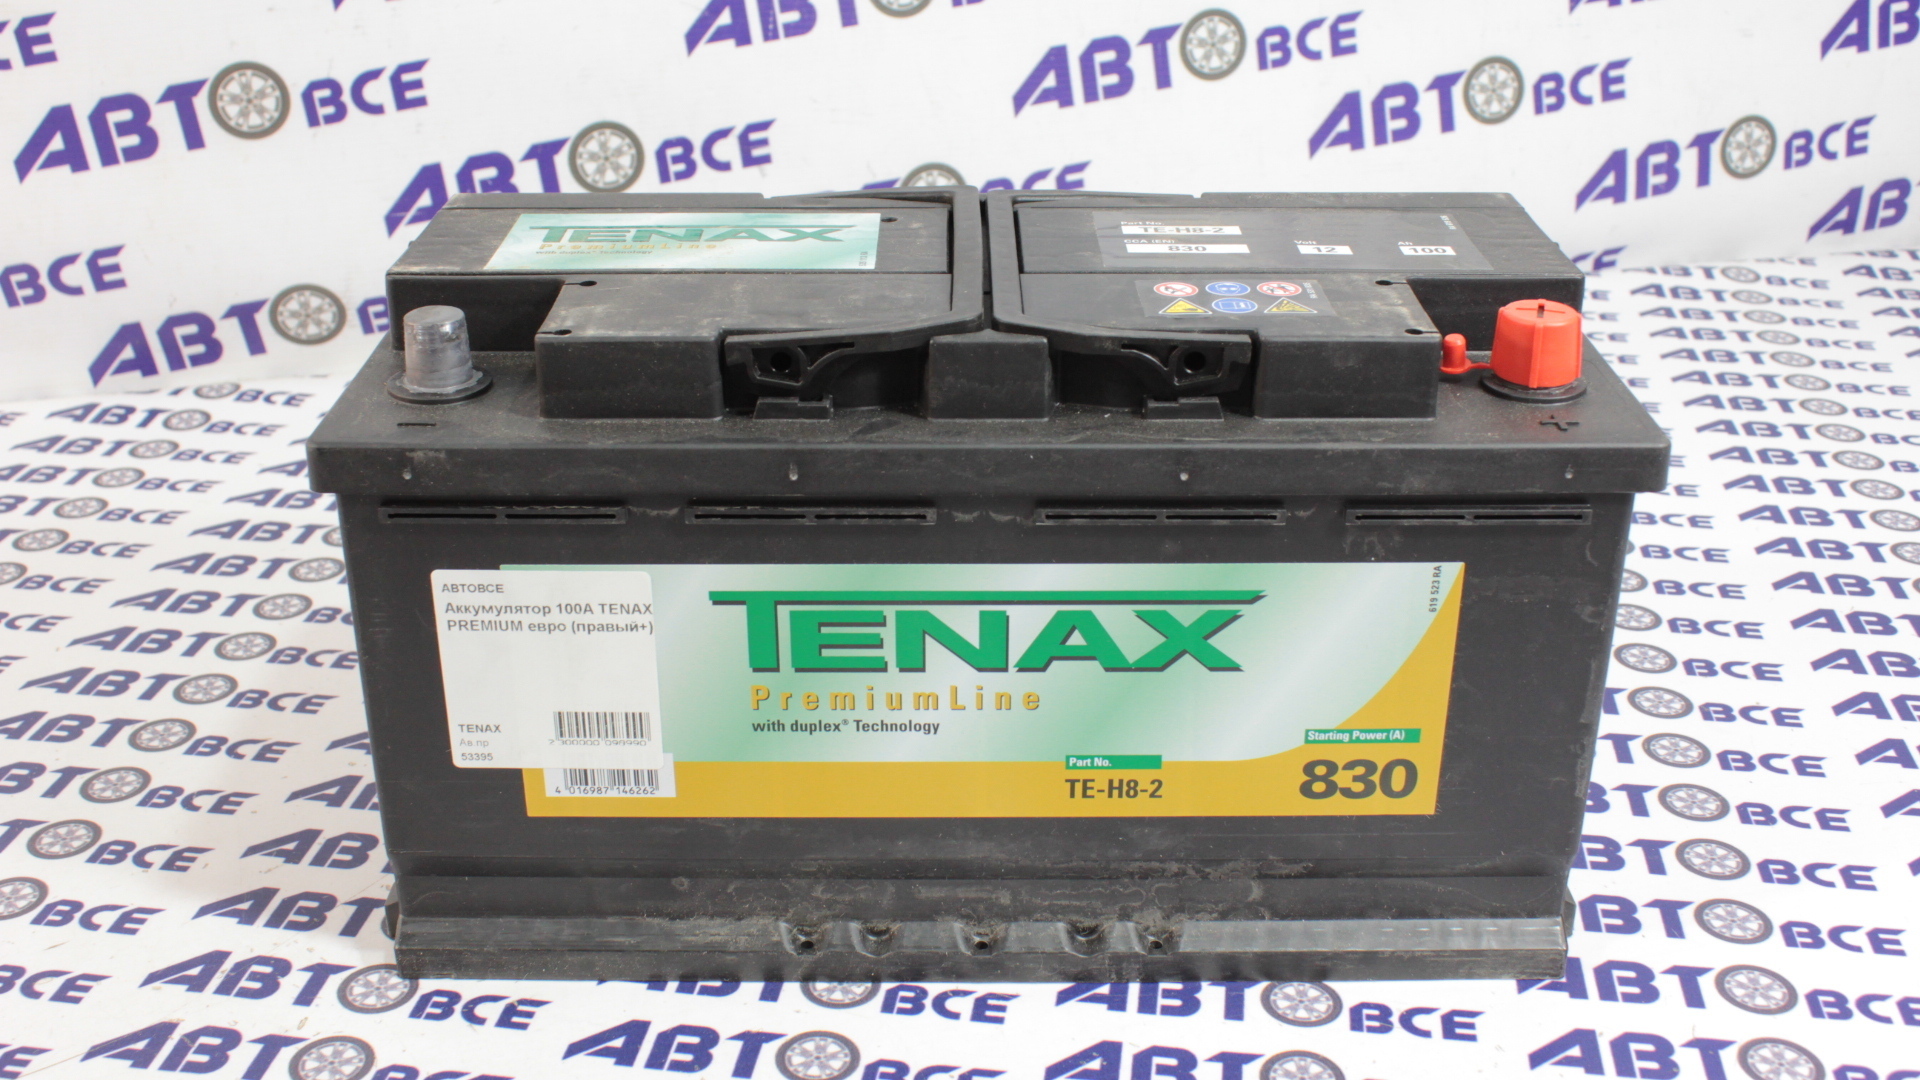 Аккумулятор 100А TENAX PREMIUM евро (правый+)